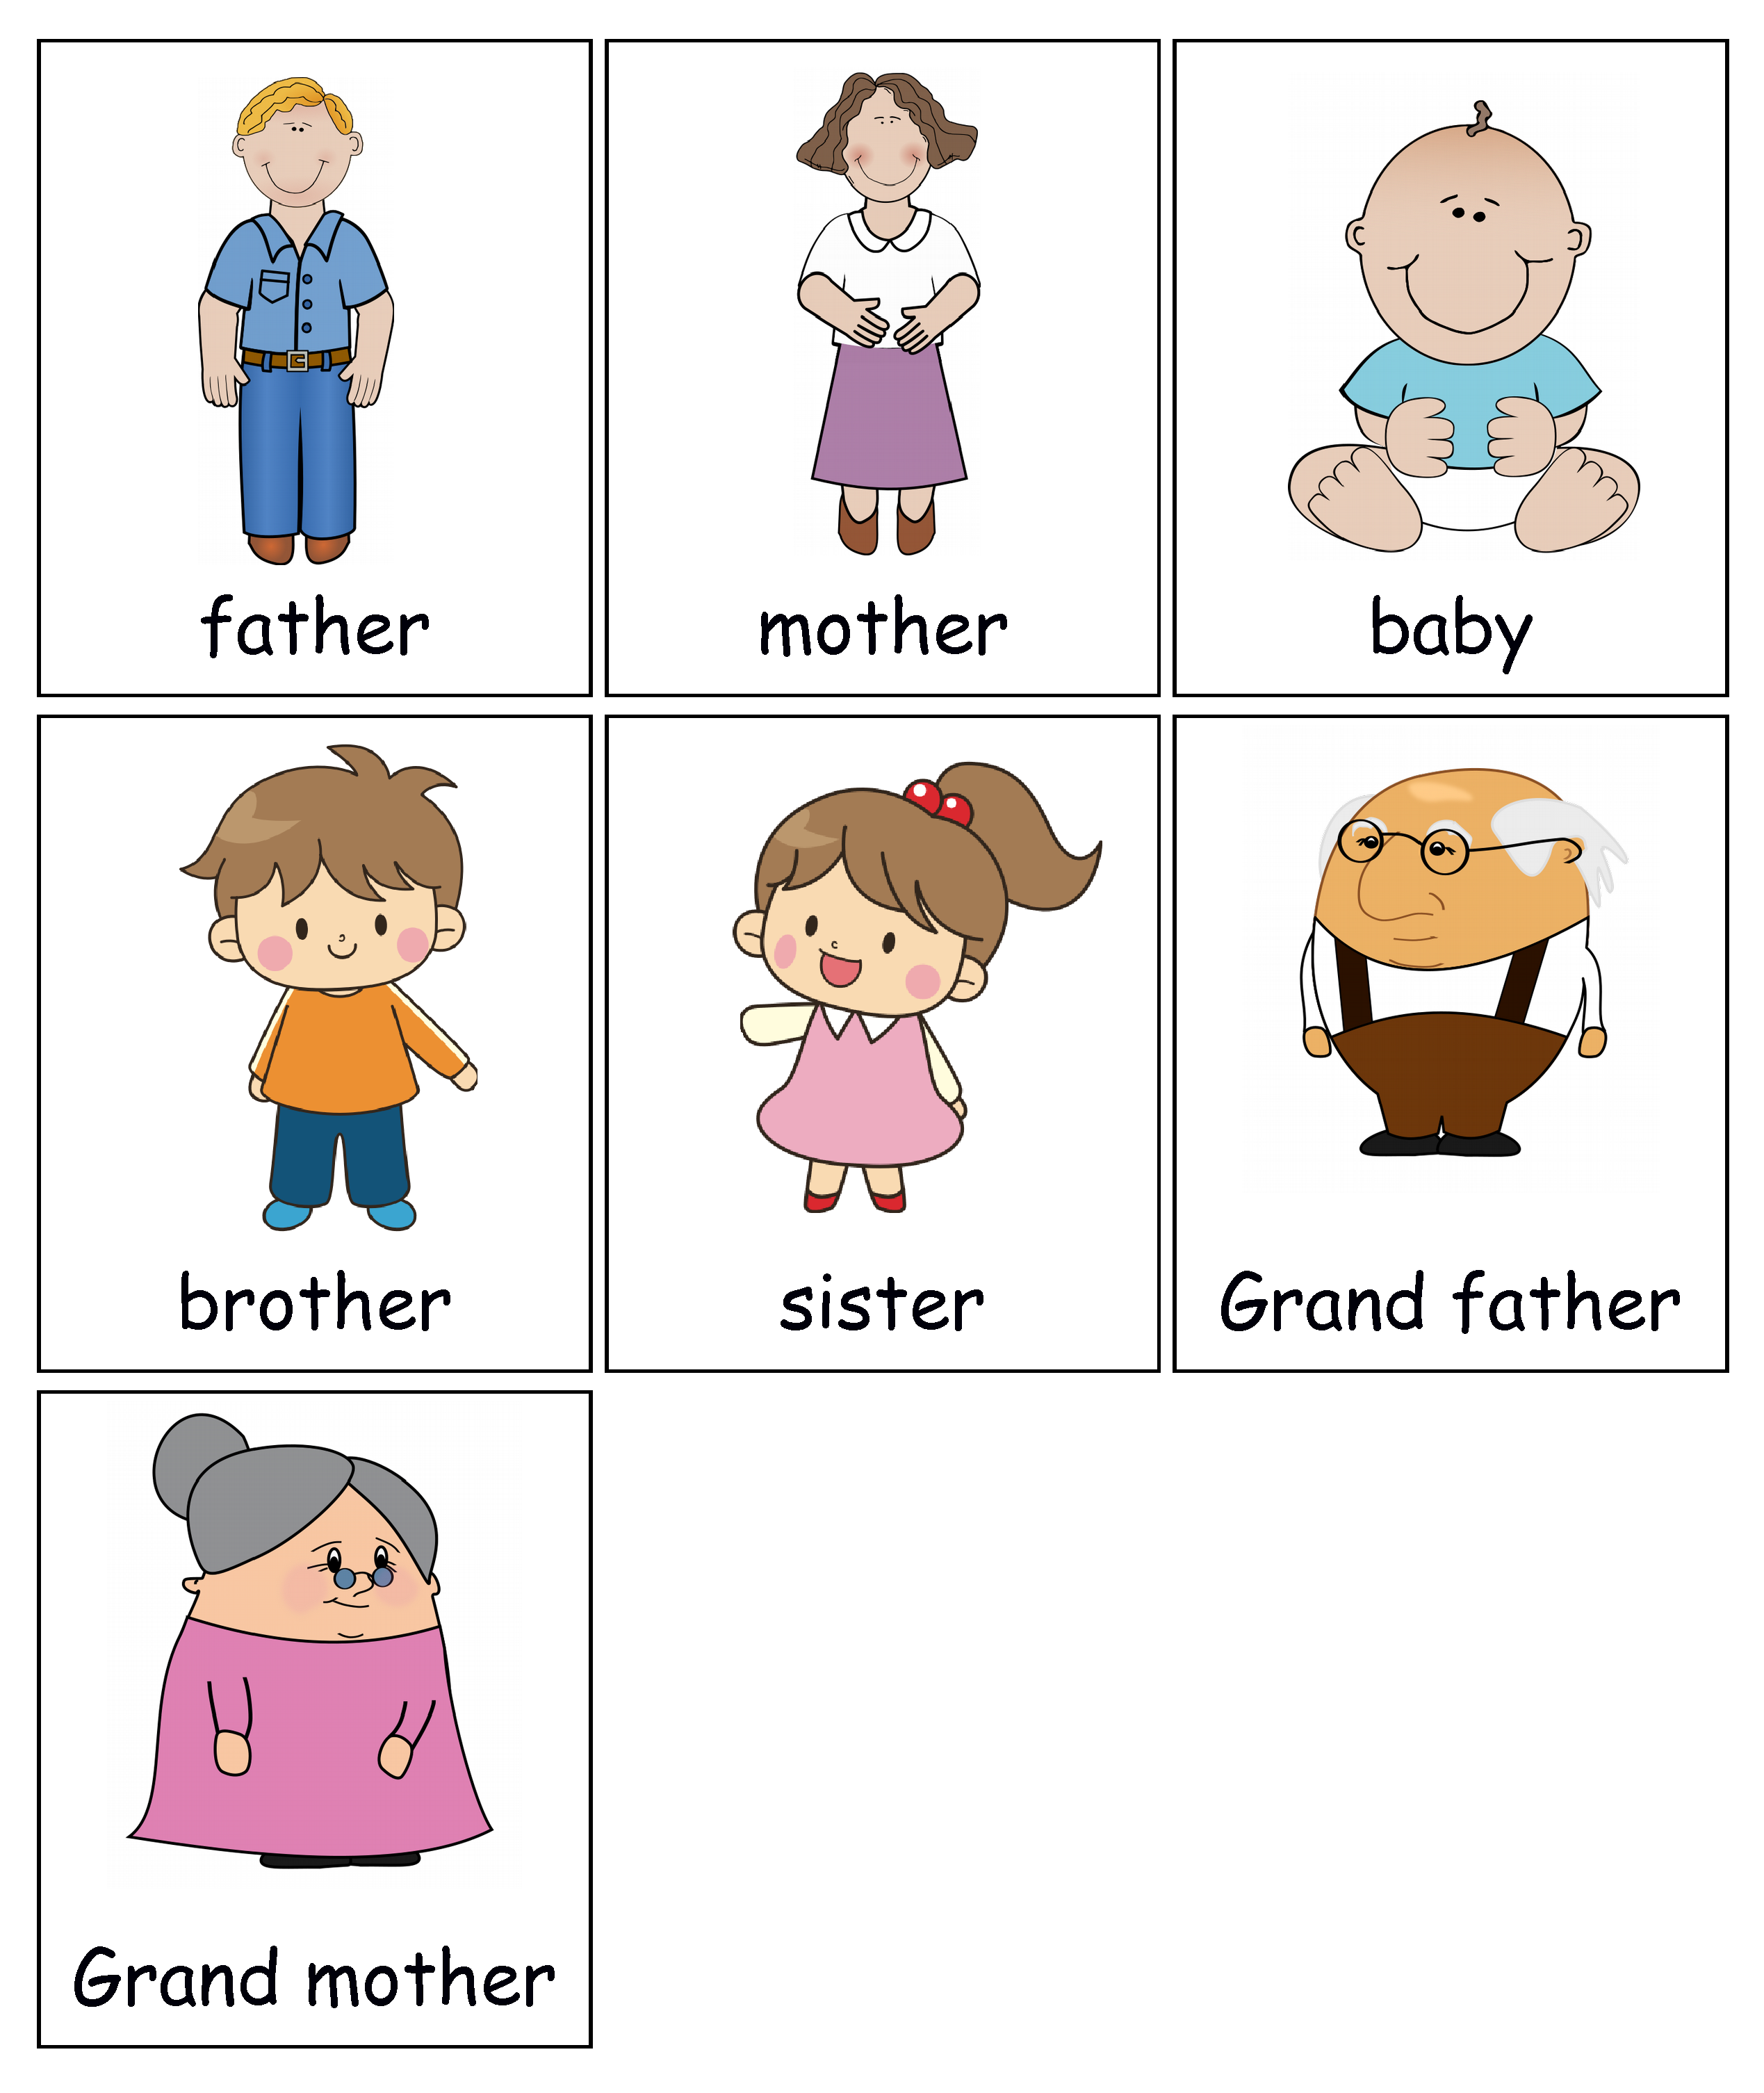 Sister по английски. Семья карточки на английском для детей. Карточки с изображением членов семьи.